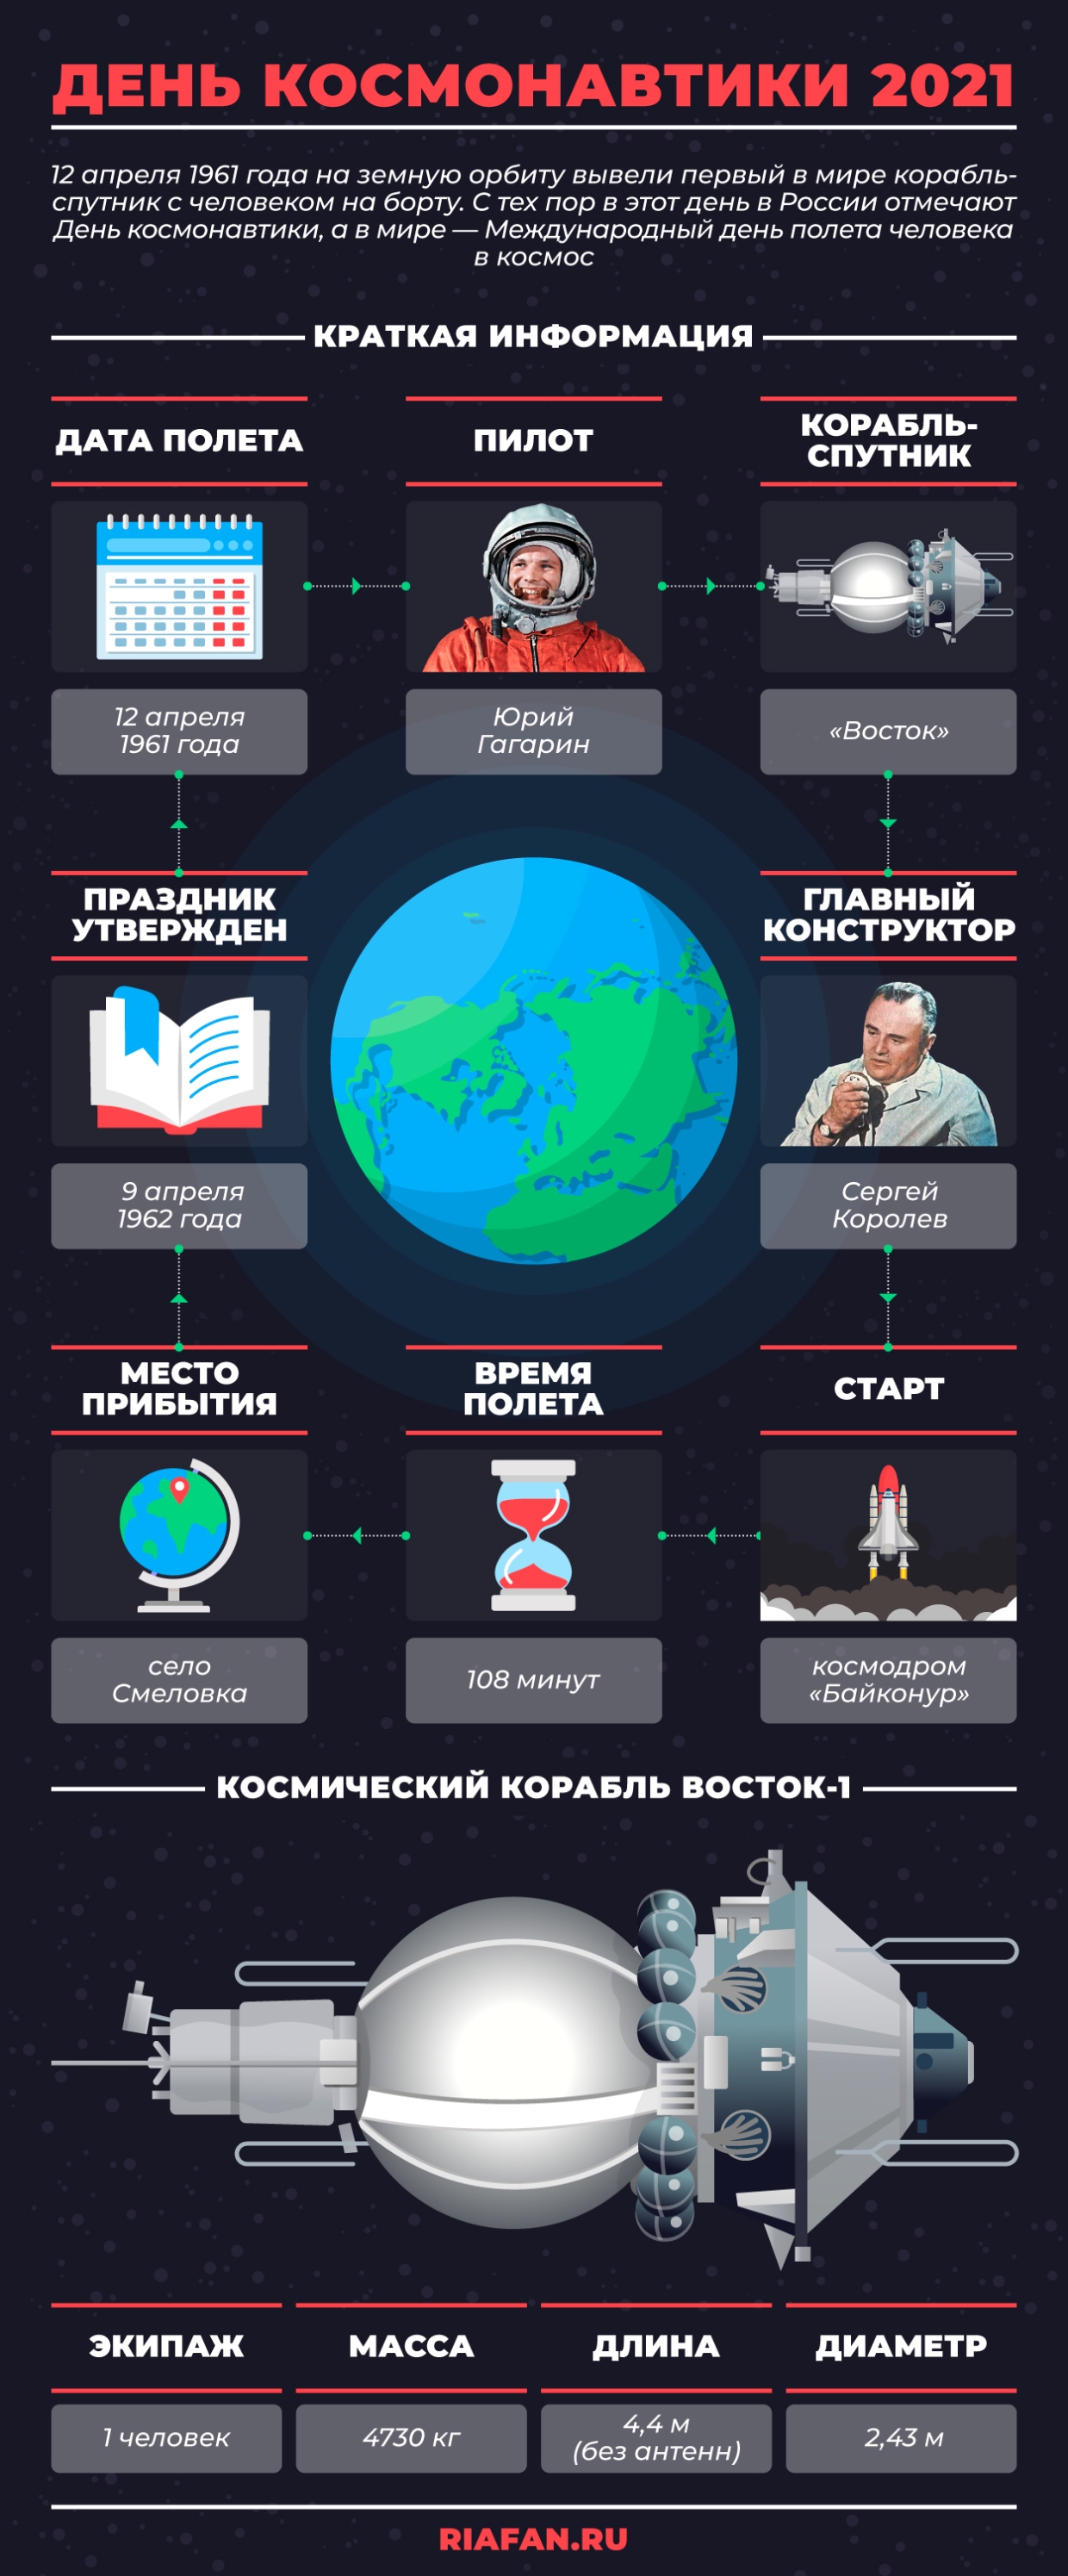 El misterio de la cicatriz de Yuri Gagarin, y de lo que murió Sergei Korolev